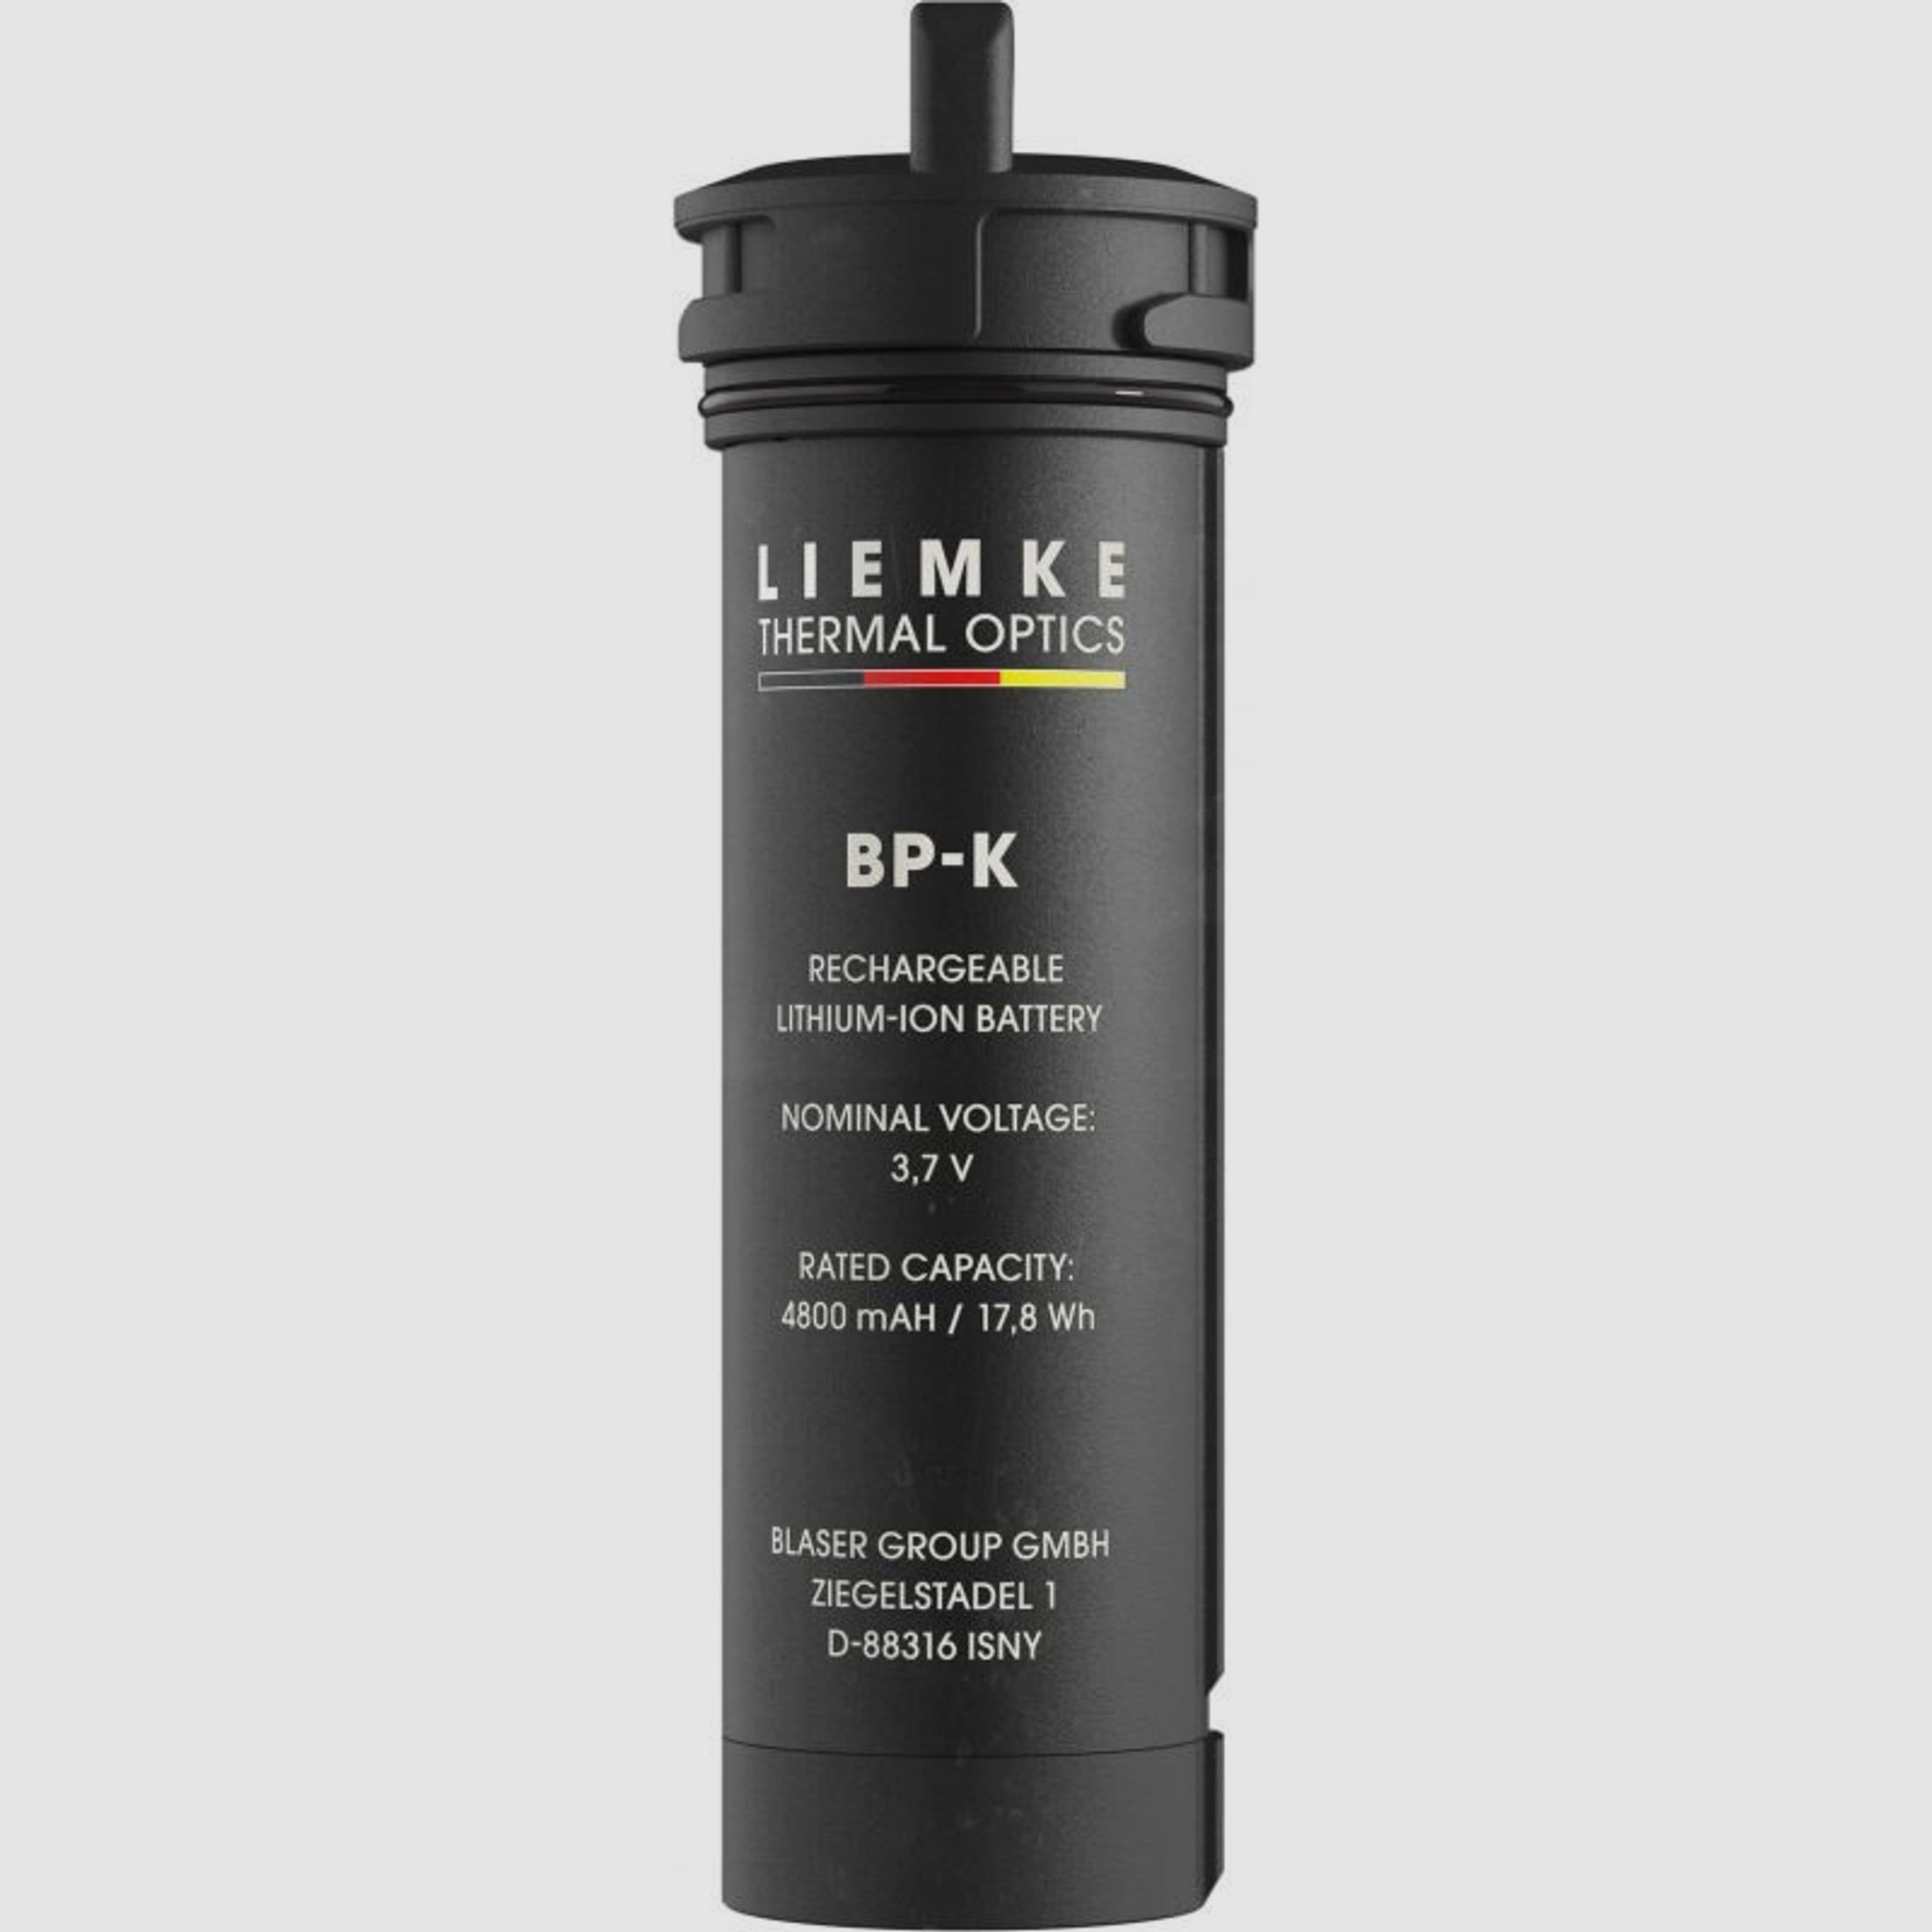 Liemke Battery Kit